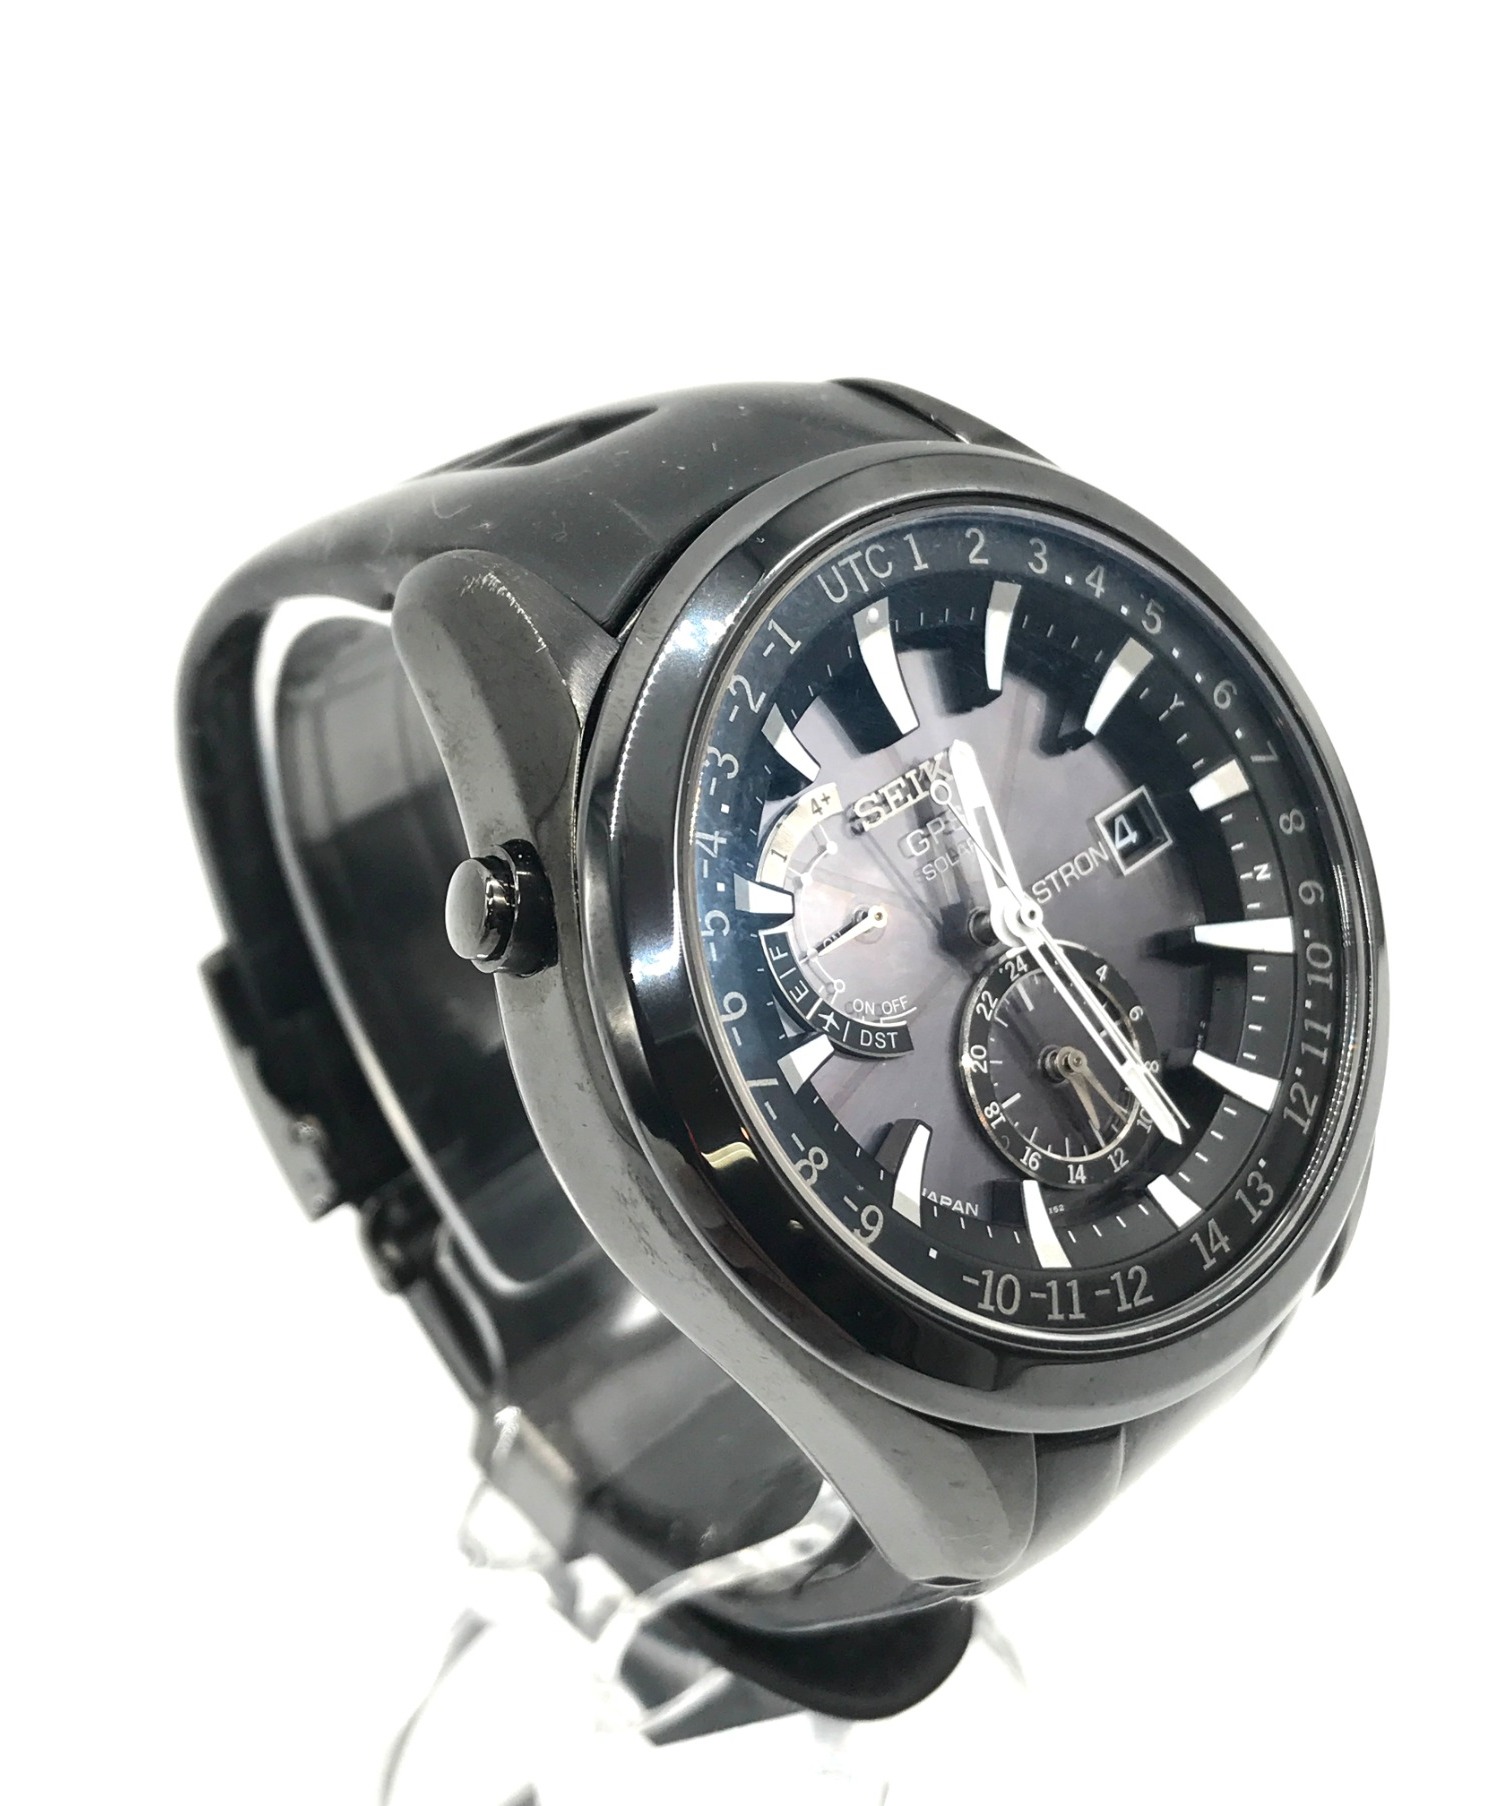 SEIKO (セイコー) GPSソーラー腕時計 サイズ:実寸サイズをご確認ください。 アストロン